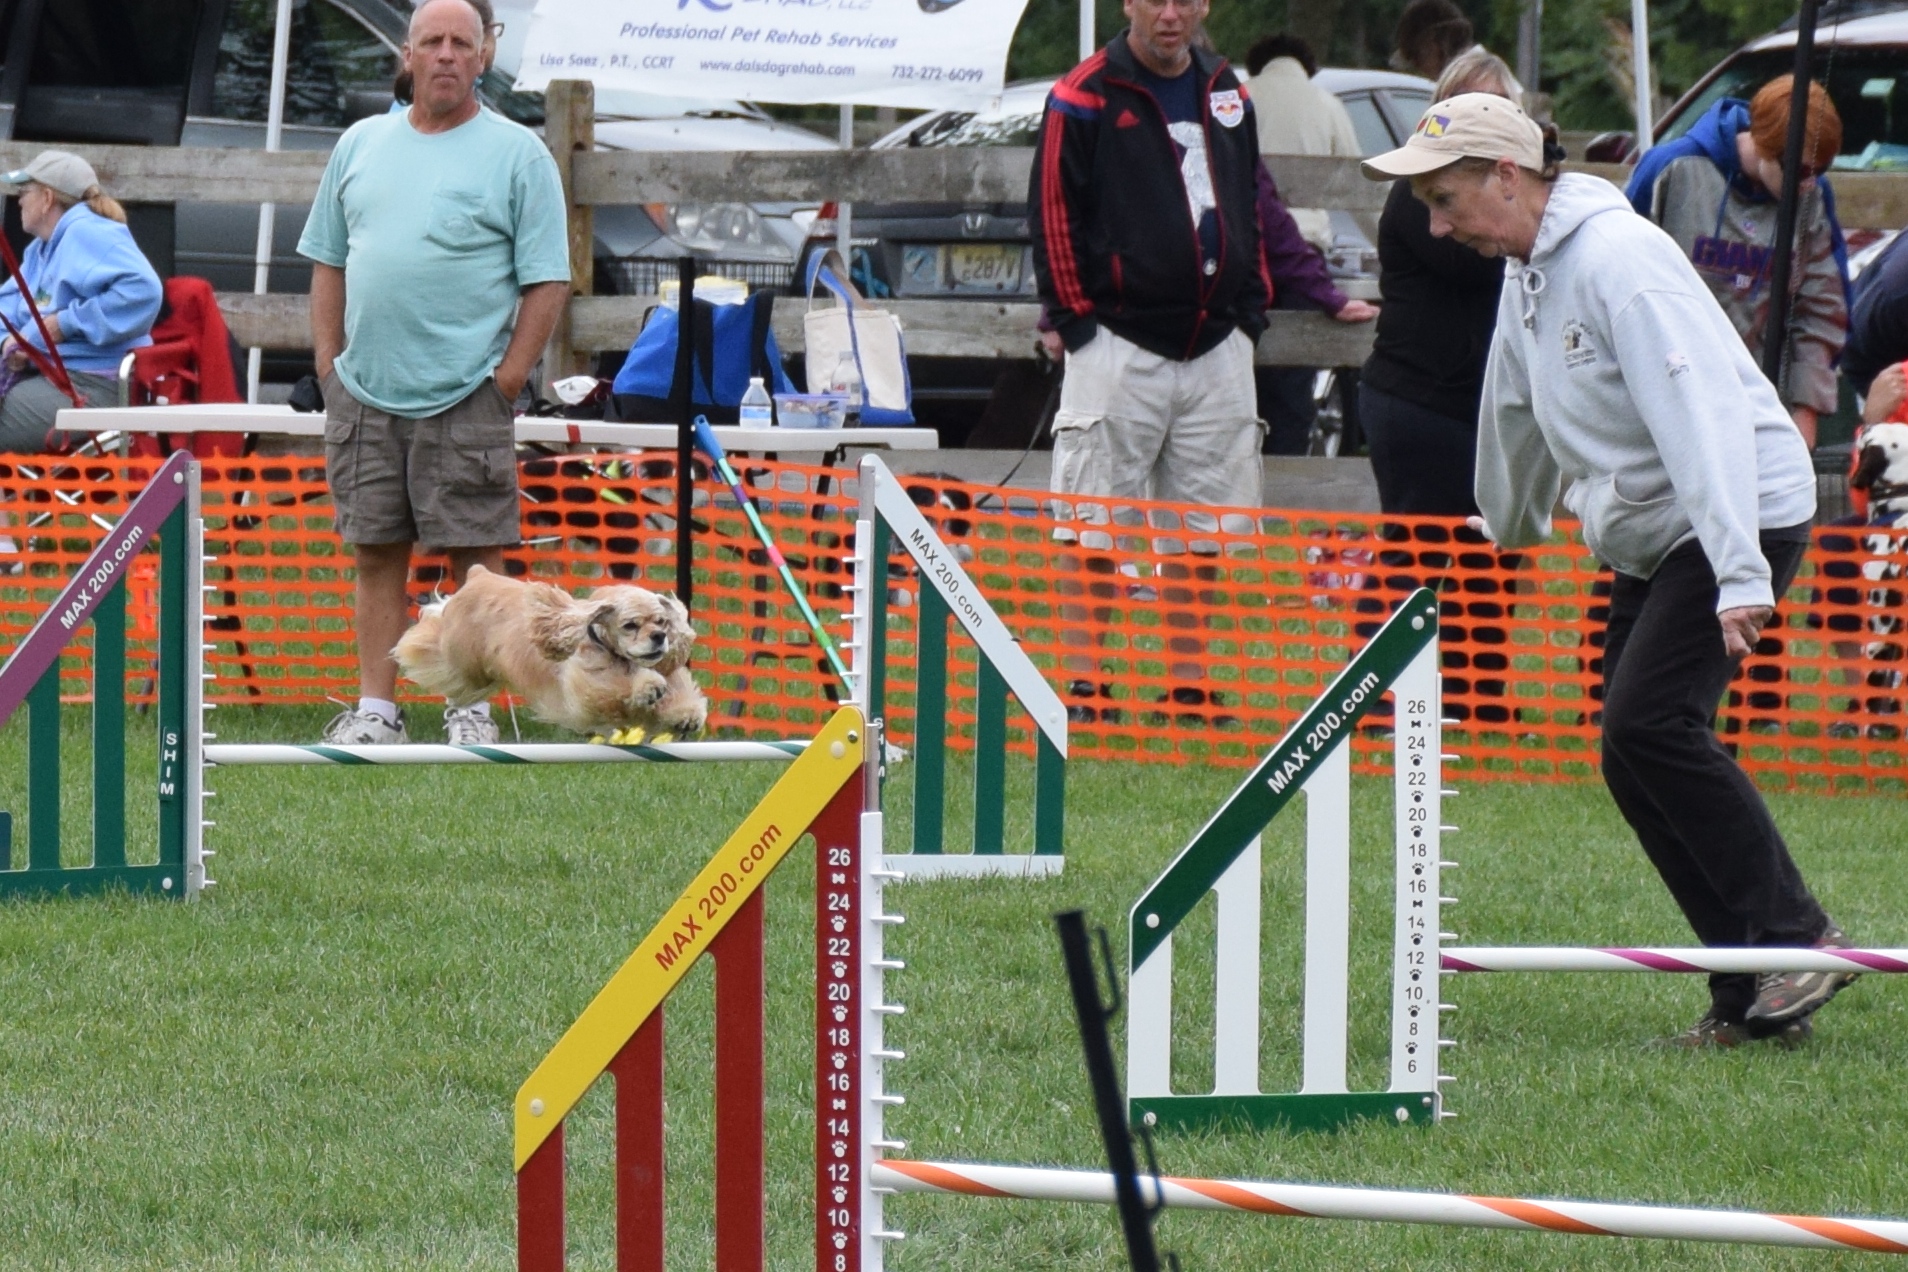  A small dog jumping hurdles at a dog agility show 